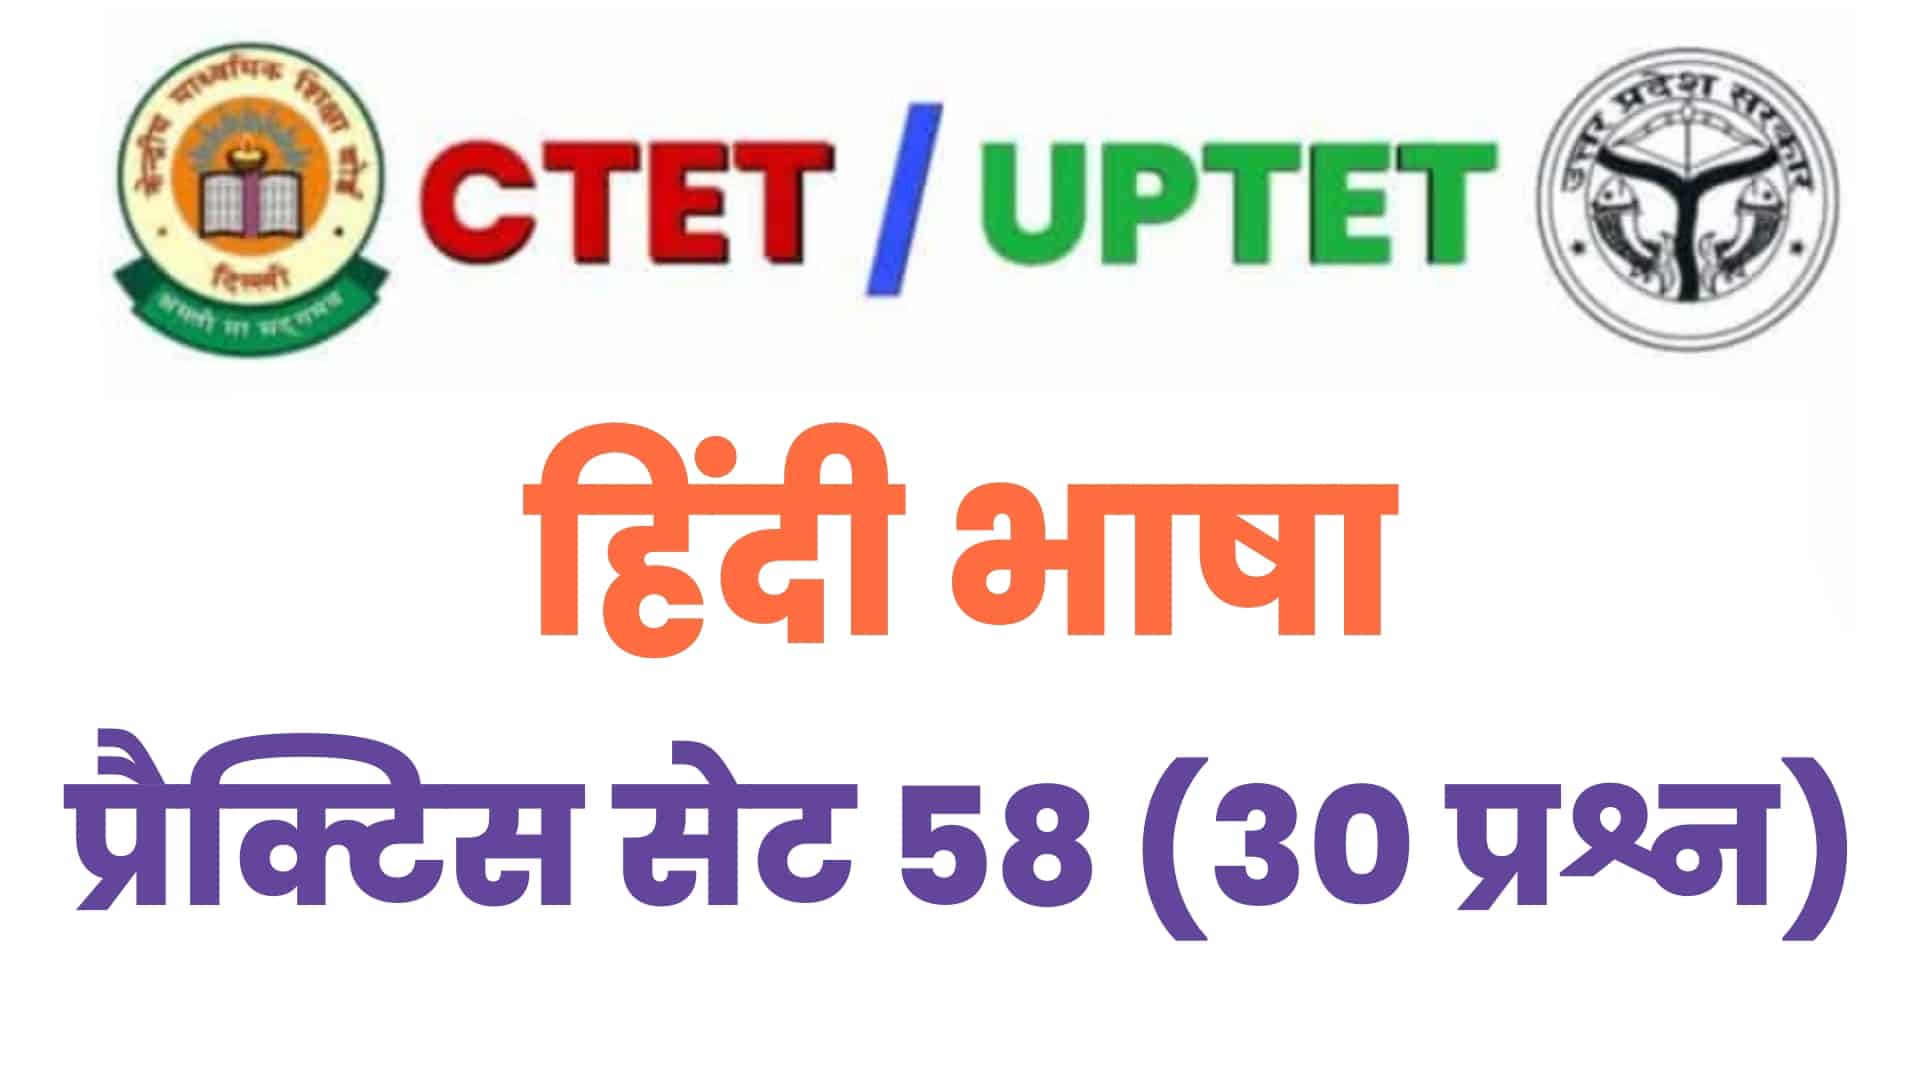 UPTET/CTET हिंदी भाषा प्रैक्टिस सेट 58 : परीक्षा में पूछे गए विगत वर्षों के इन 30 महत्वपूर्ण प्रश्नों का करें अध्ययन